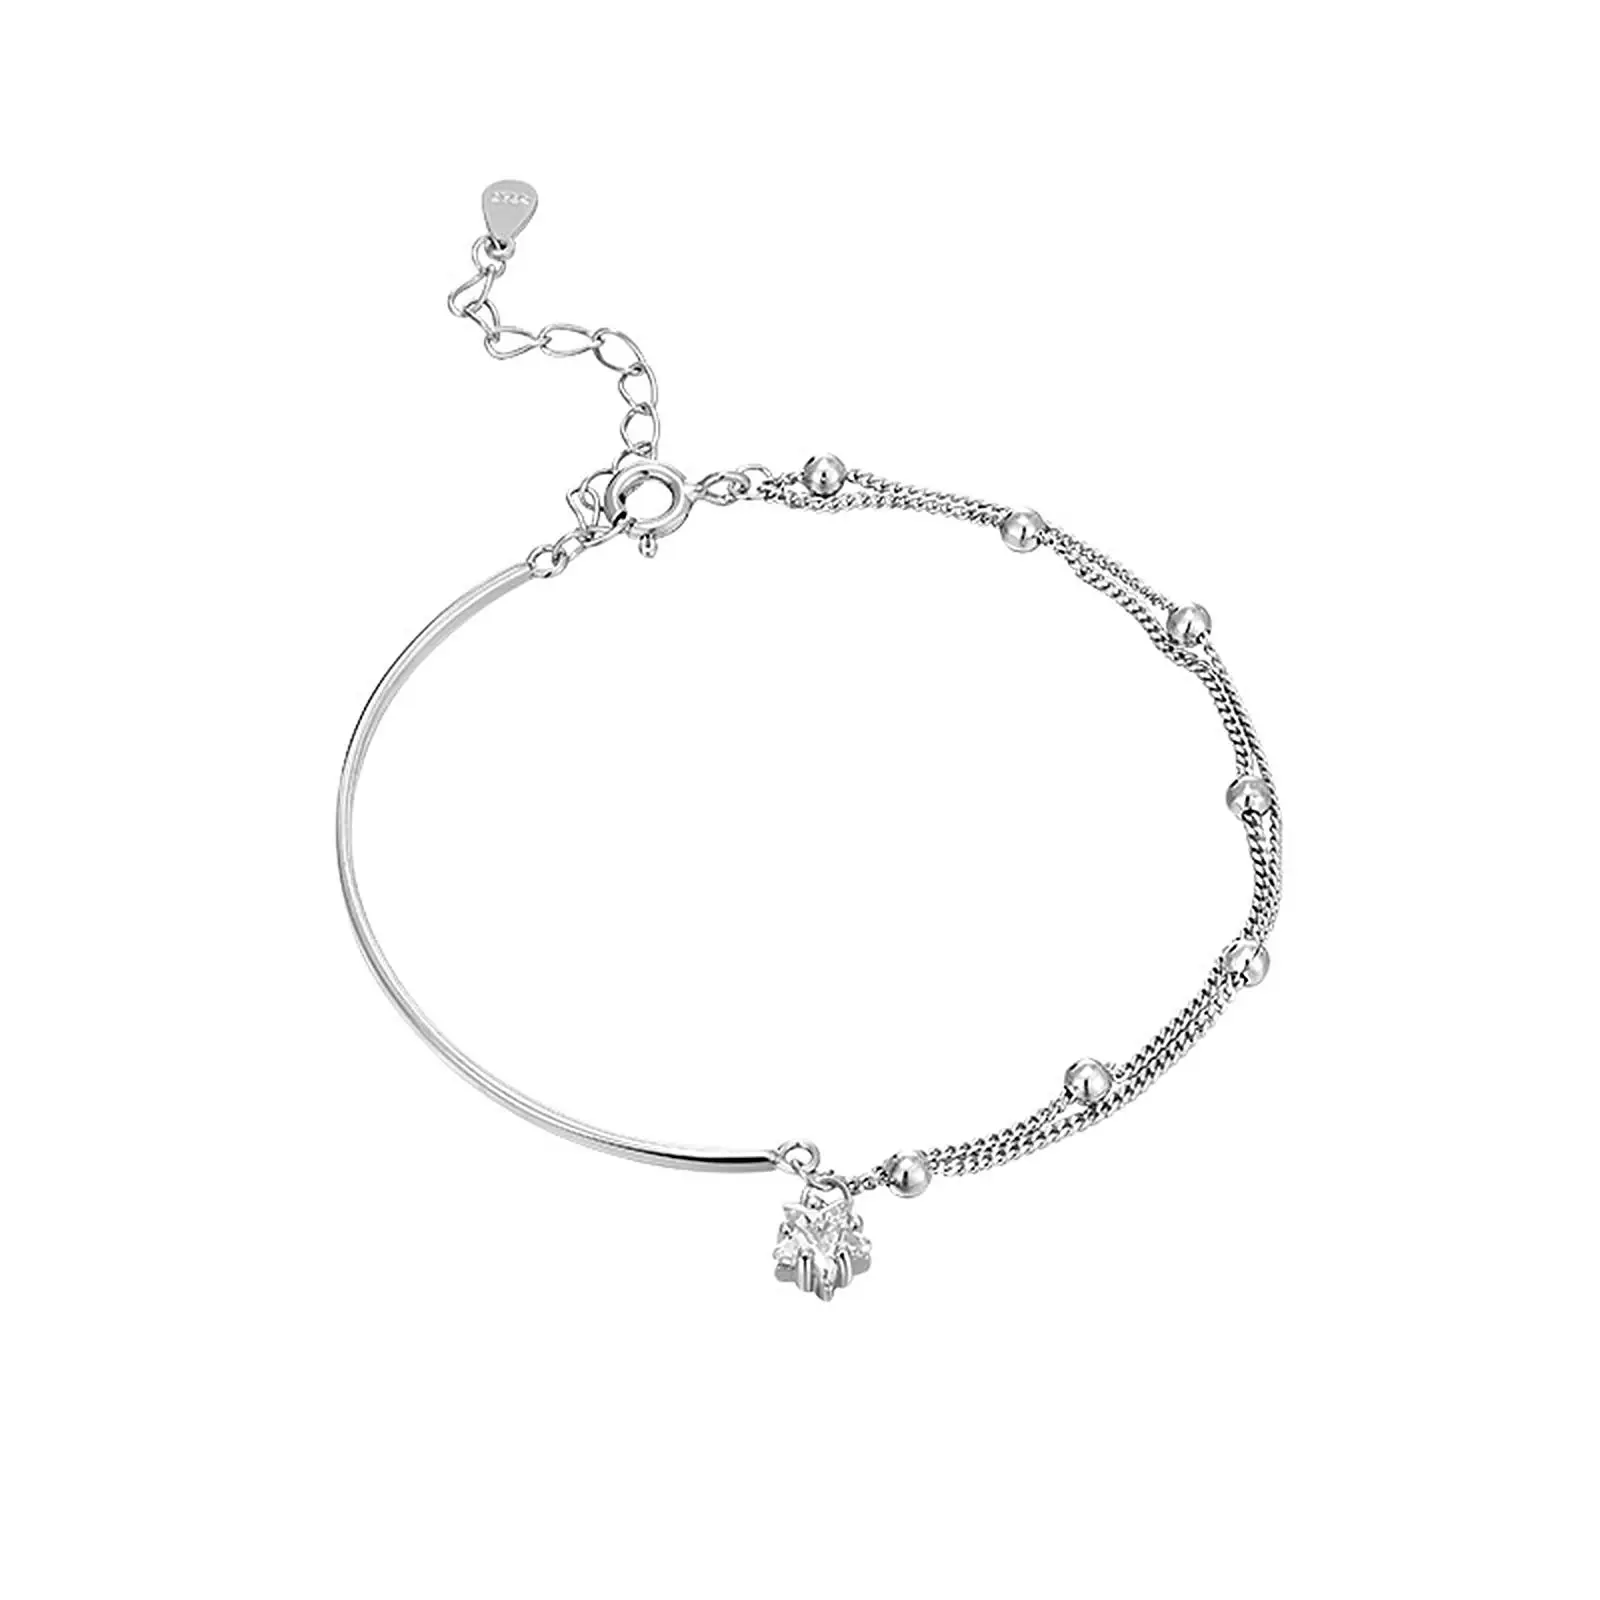 Silver Star Bracelet Accessories Women Bracelet for Lover Girlfriend Wedding